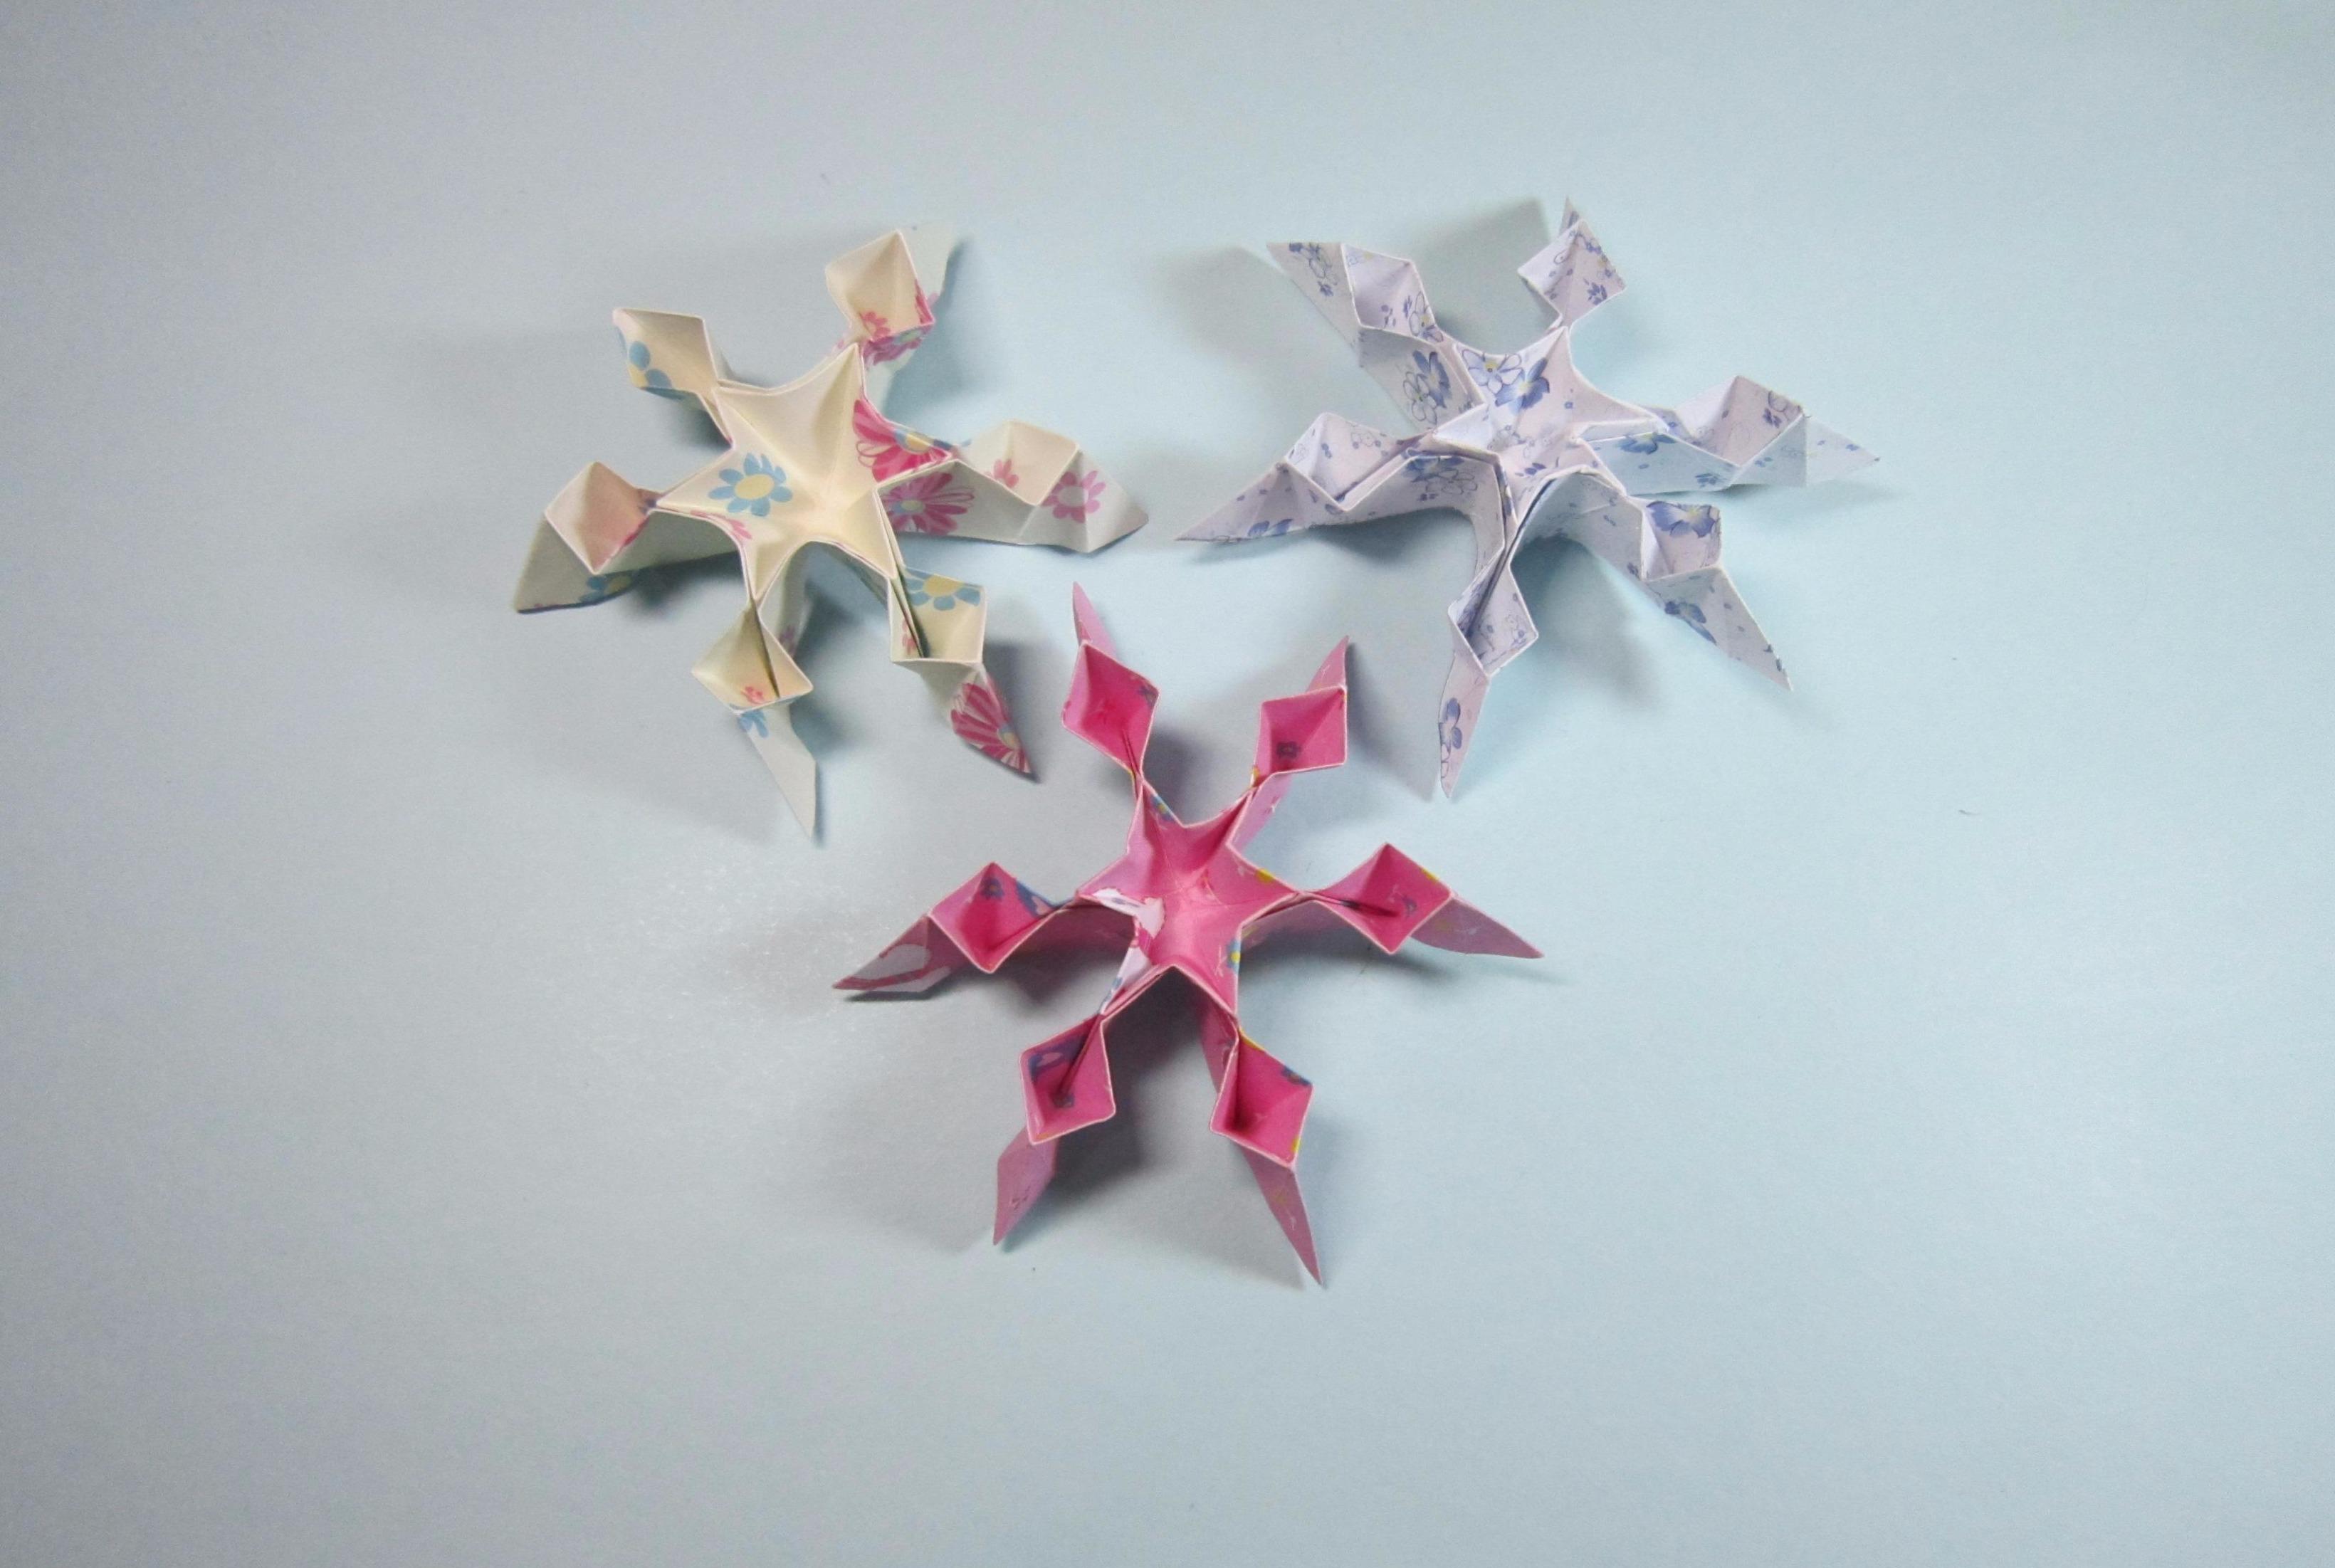 视频-儿童手工折纸教程:一张纸就能折出简单又漂亮的立体雪花